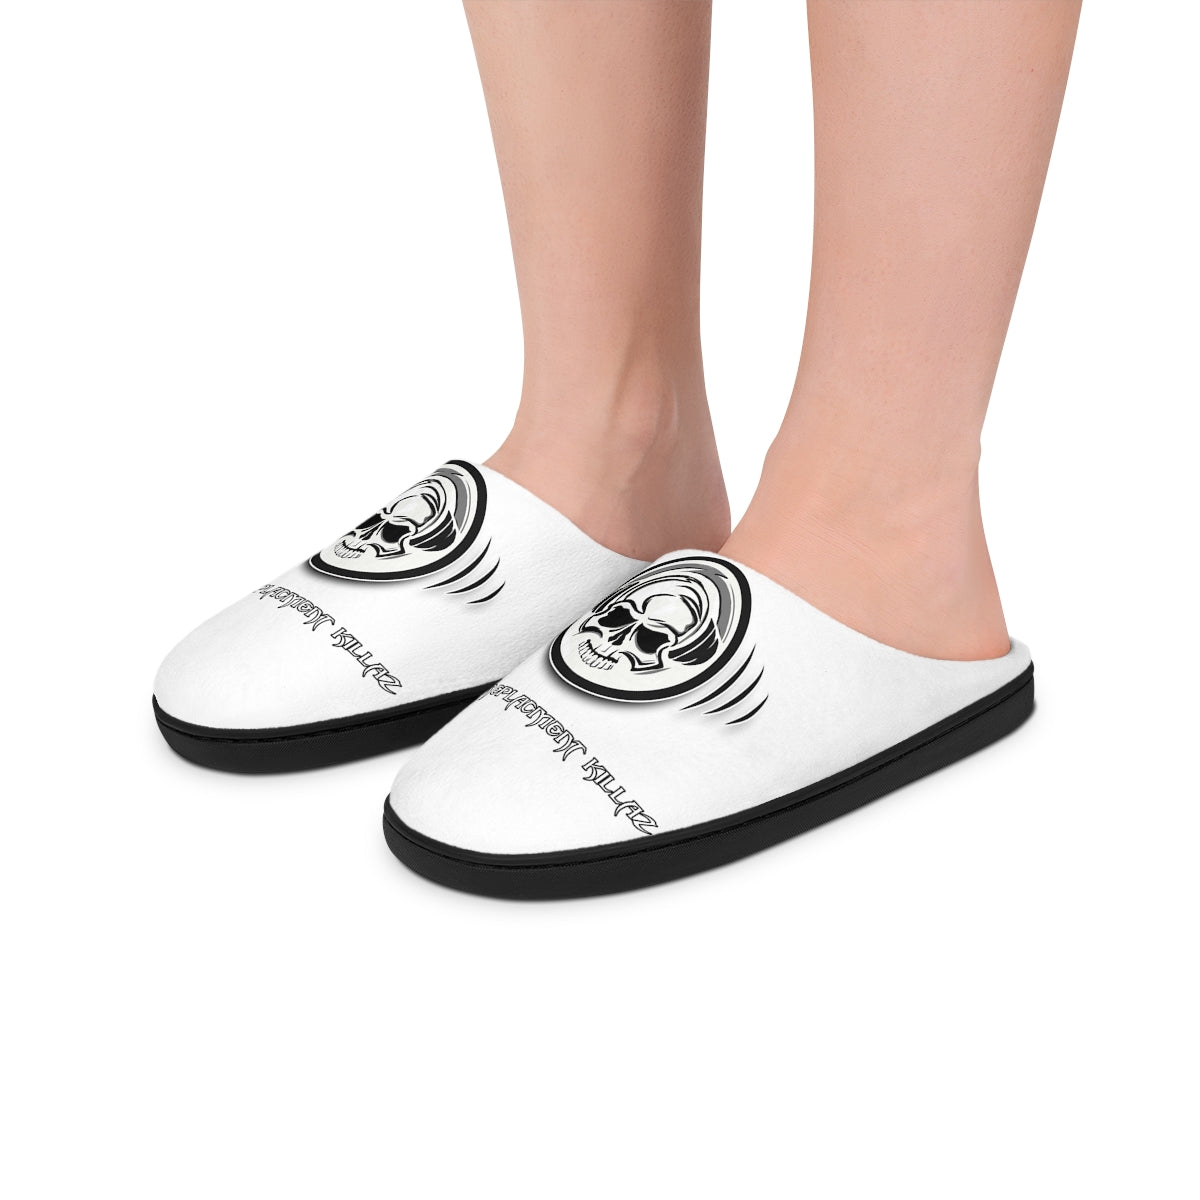 TRK Women's Indoor Slippers